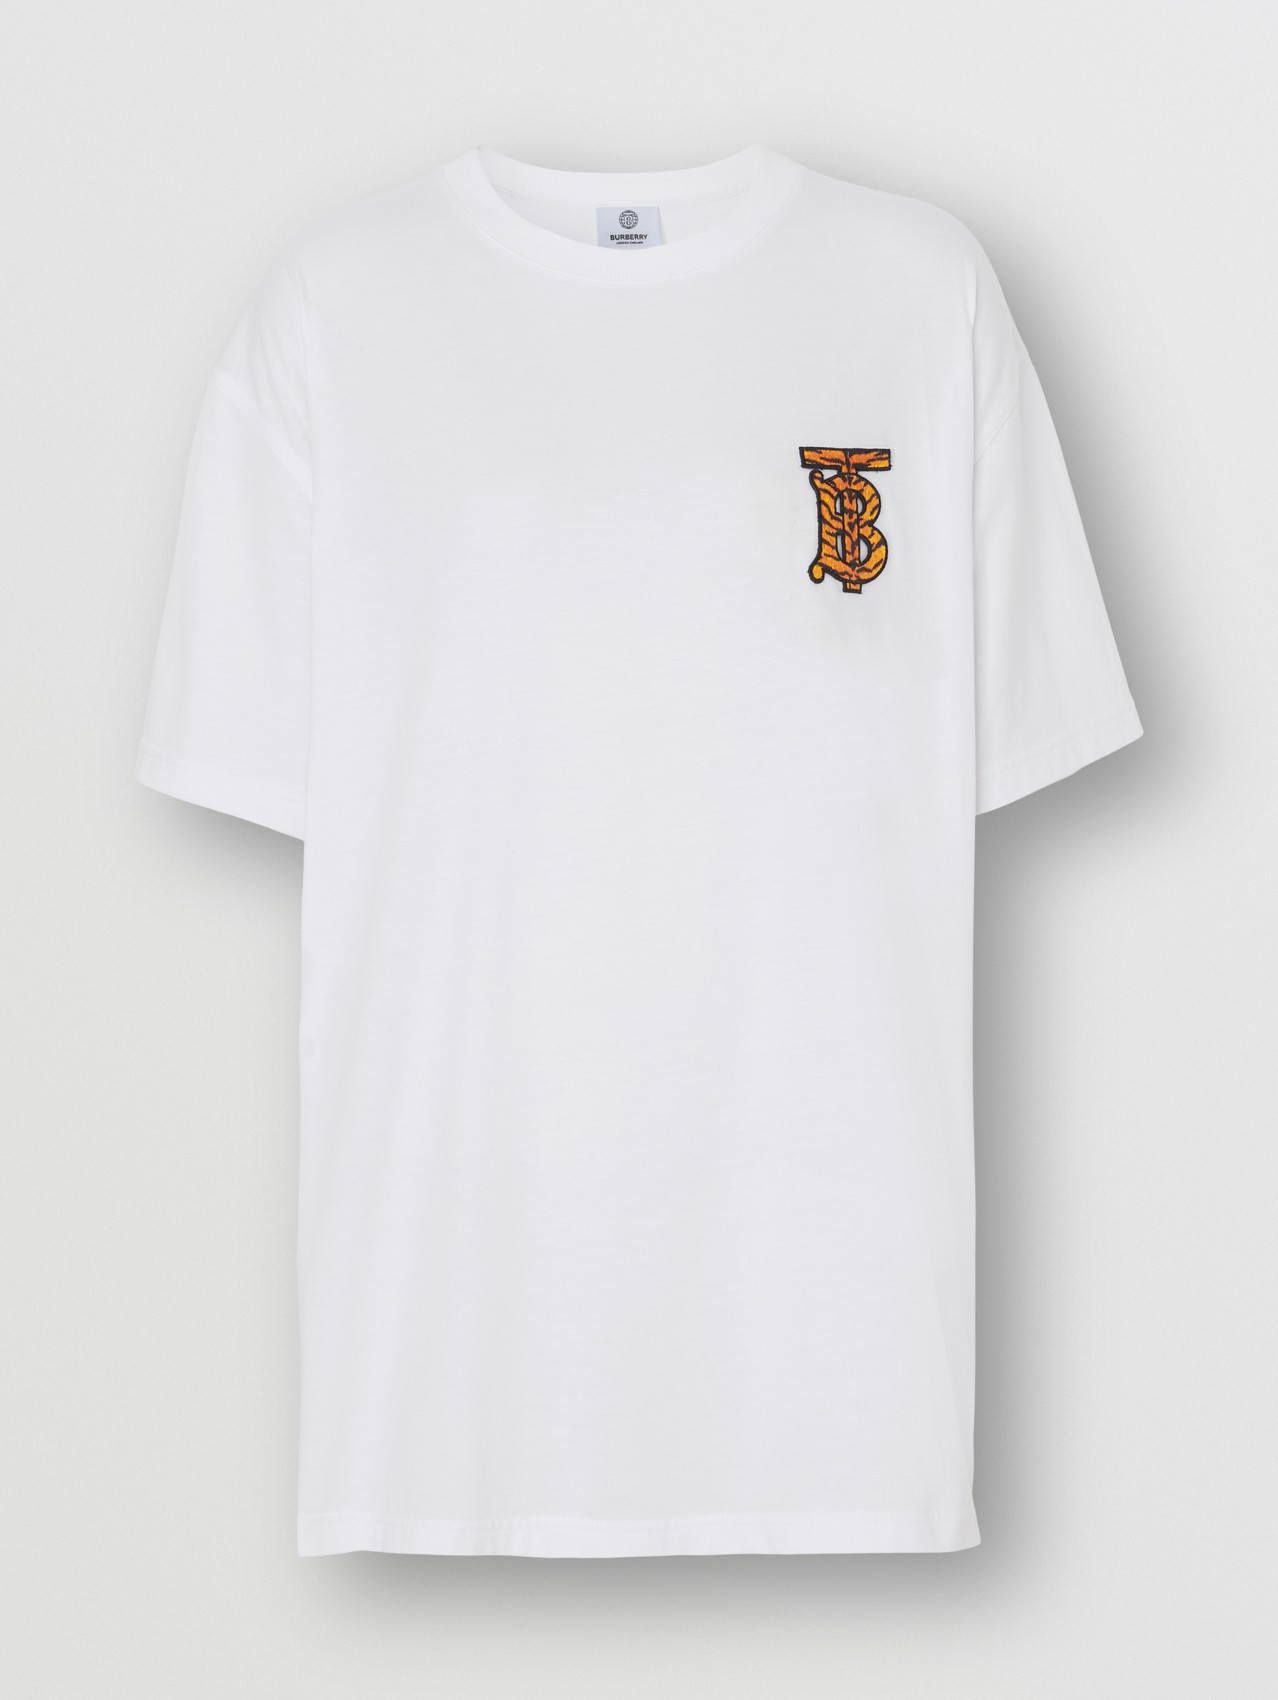 专属标识装饰棉质宽松 T 恤衫 in 白色